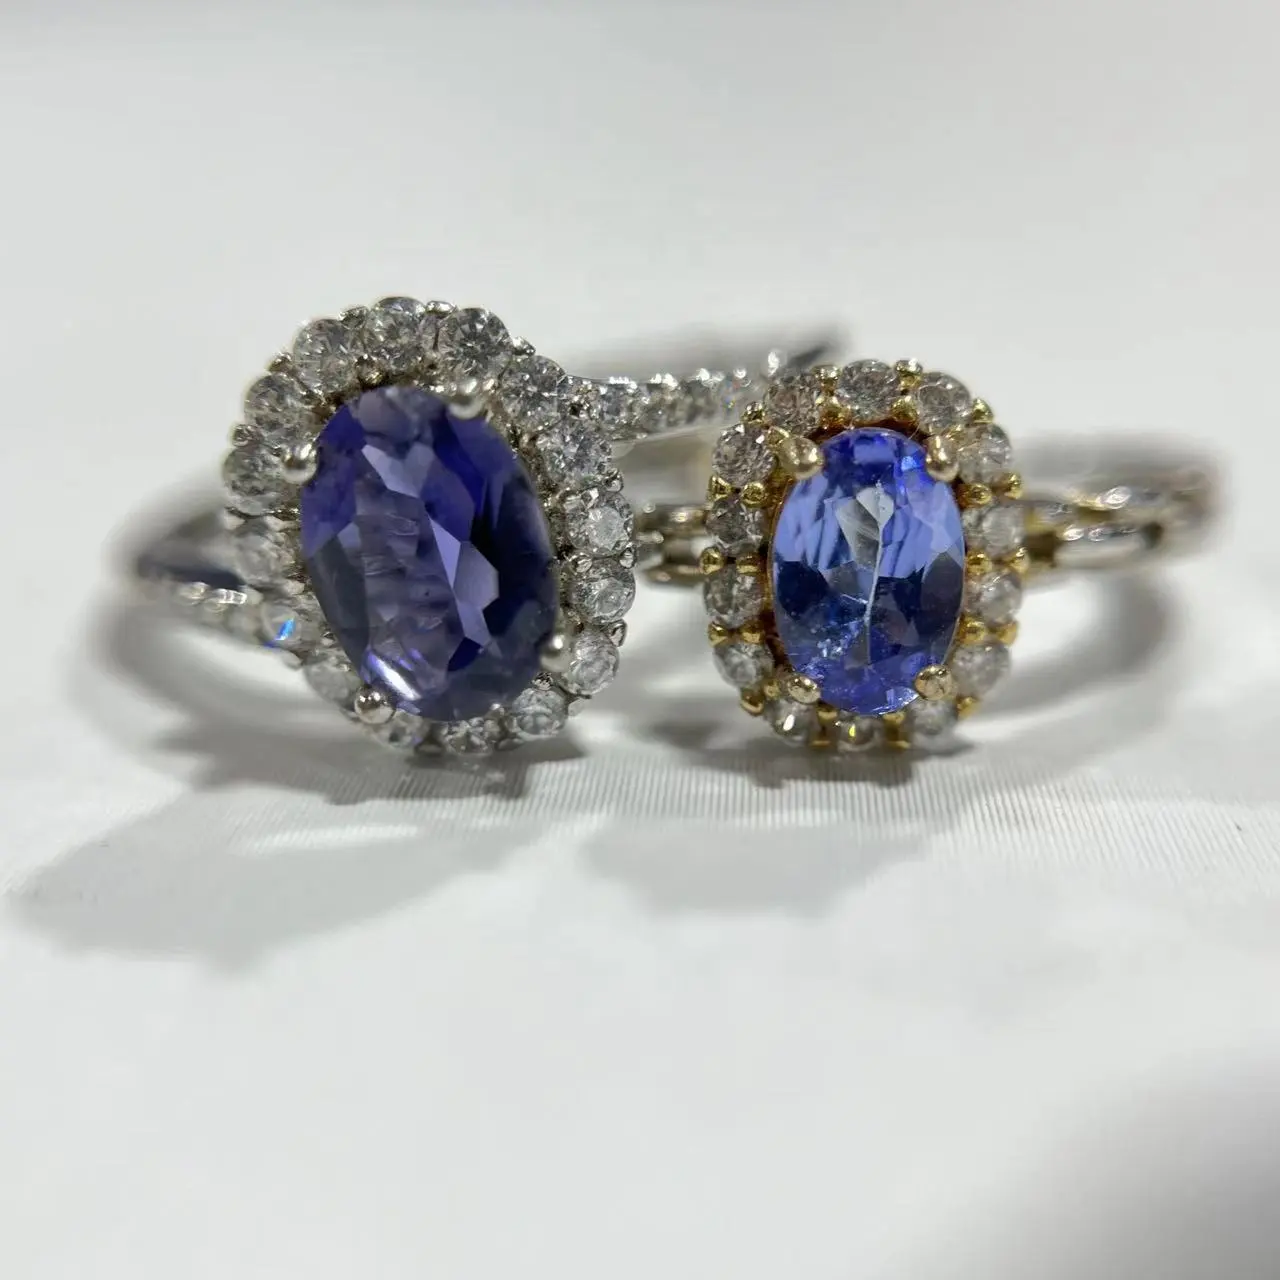 Venta al por mayor joyería de piedras preciosas naturales S925 anillo de cristal de tanzanita anillos para mujeres y hombres y regalo